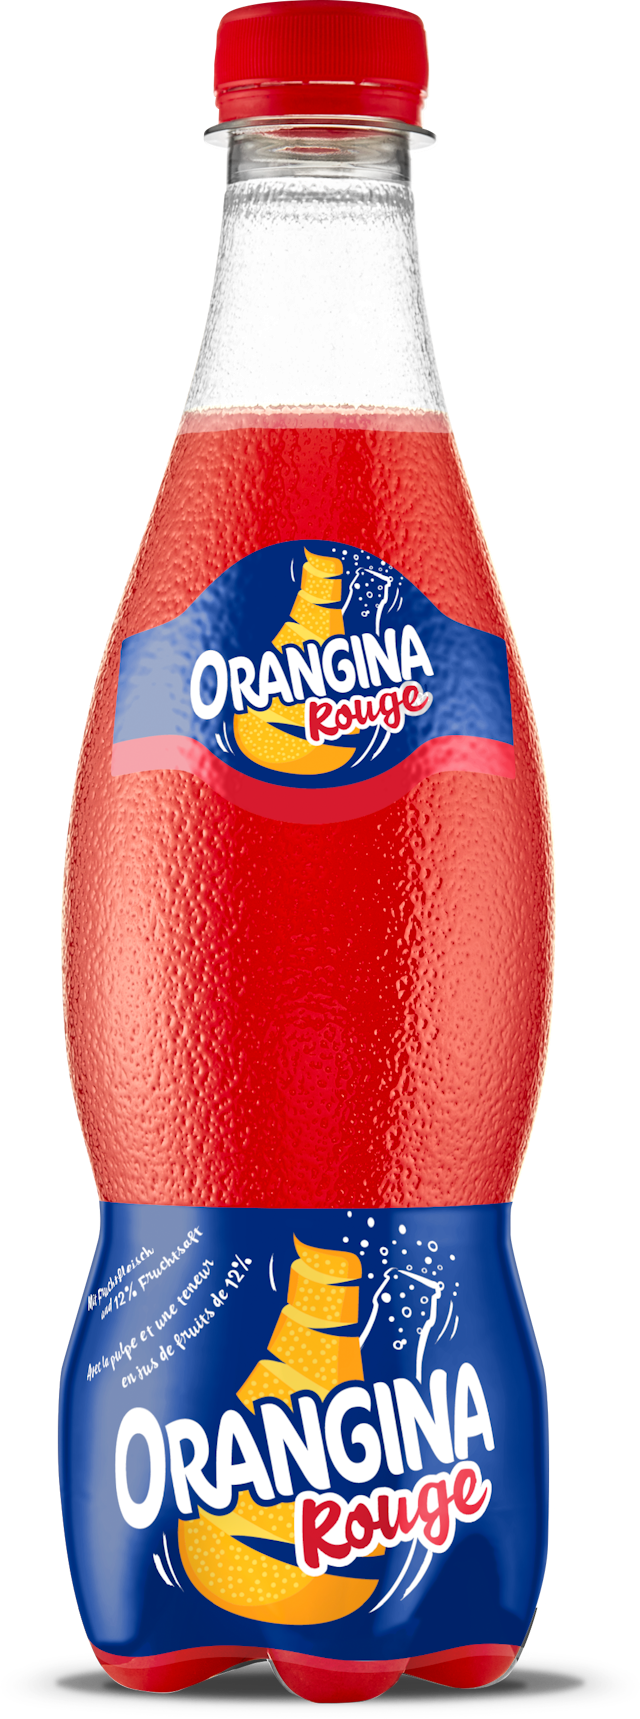 bottle of Orangina exploding